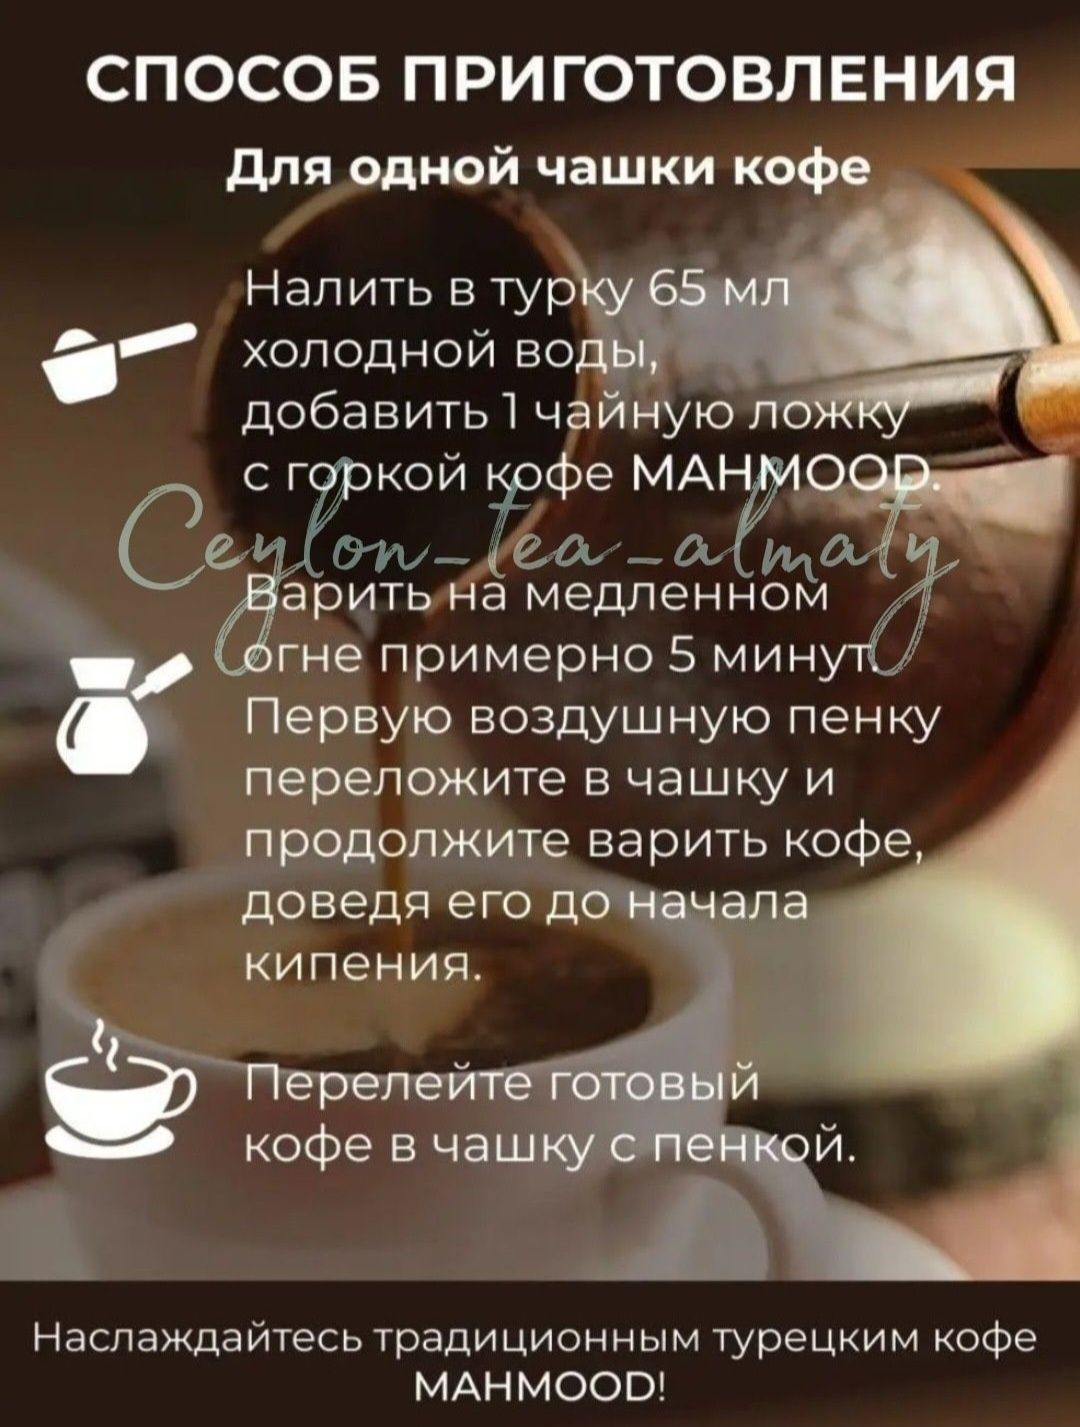 Mahmood Coffee/Turk Kahvesi/Турецкий/кофе/Premium/молотый/220гр